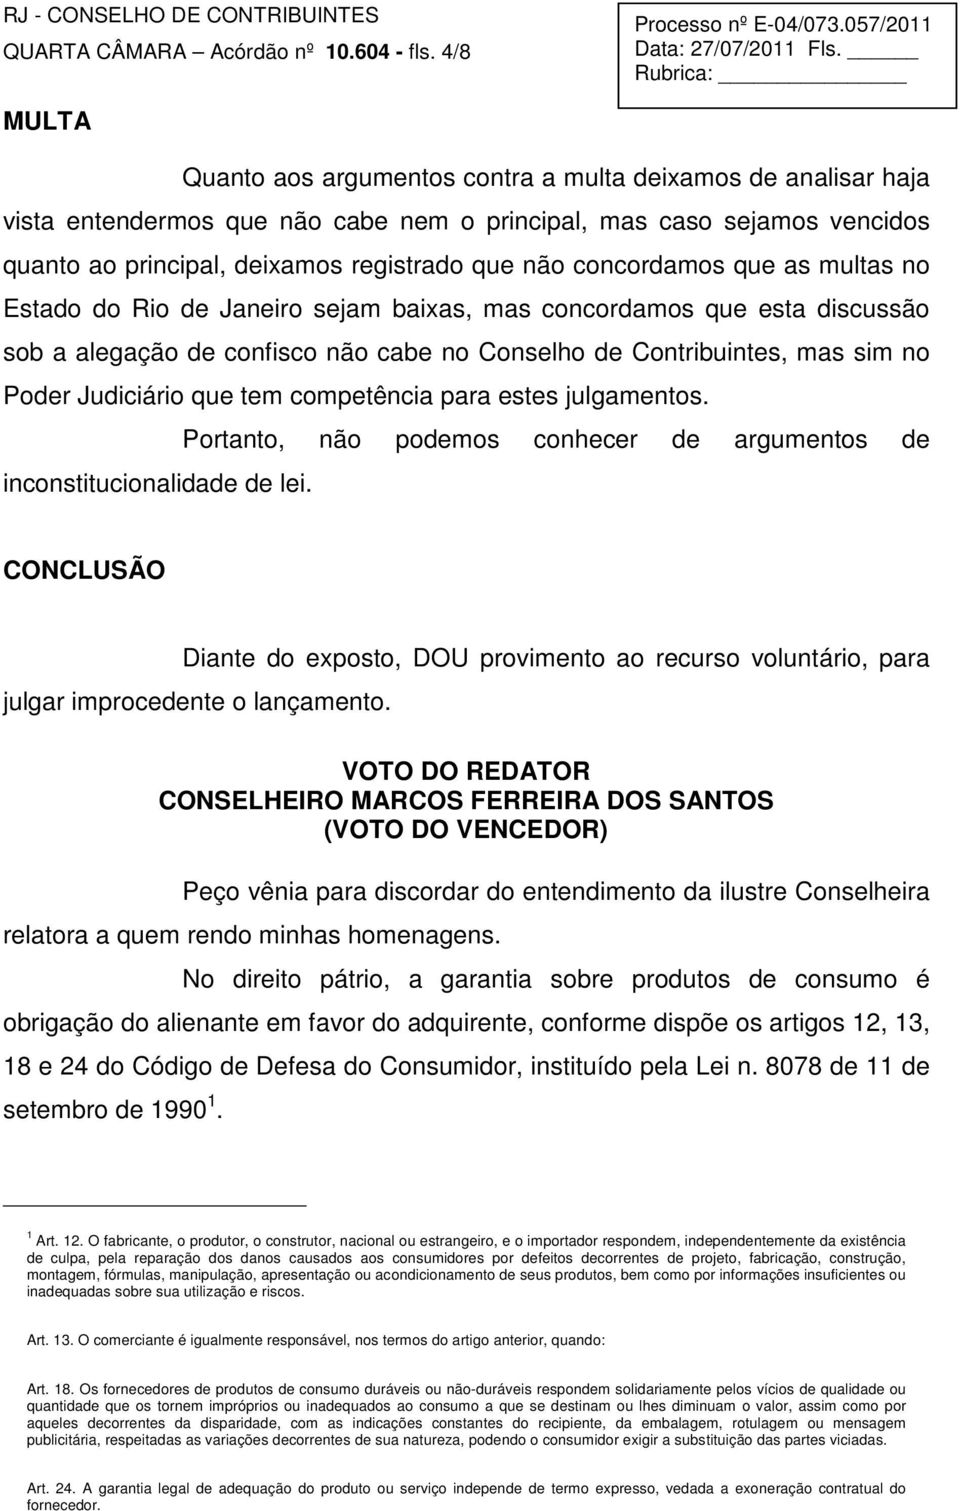 concordamos que as multas no Estado do Rio de Janeiro sejam baixas, mas concordamos que esta discussão sob a alegação de confisco não cabe no Conselho de Contribuintes, mas sim no Poder Judiciário